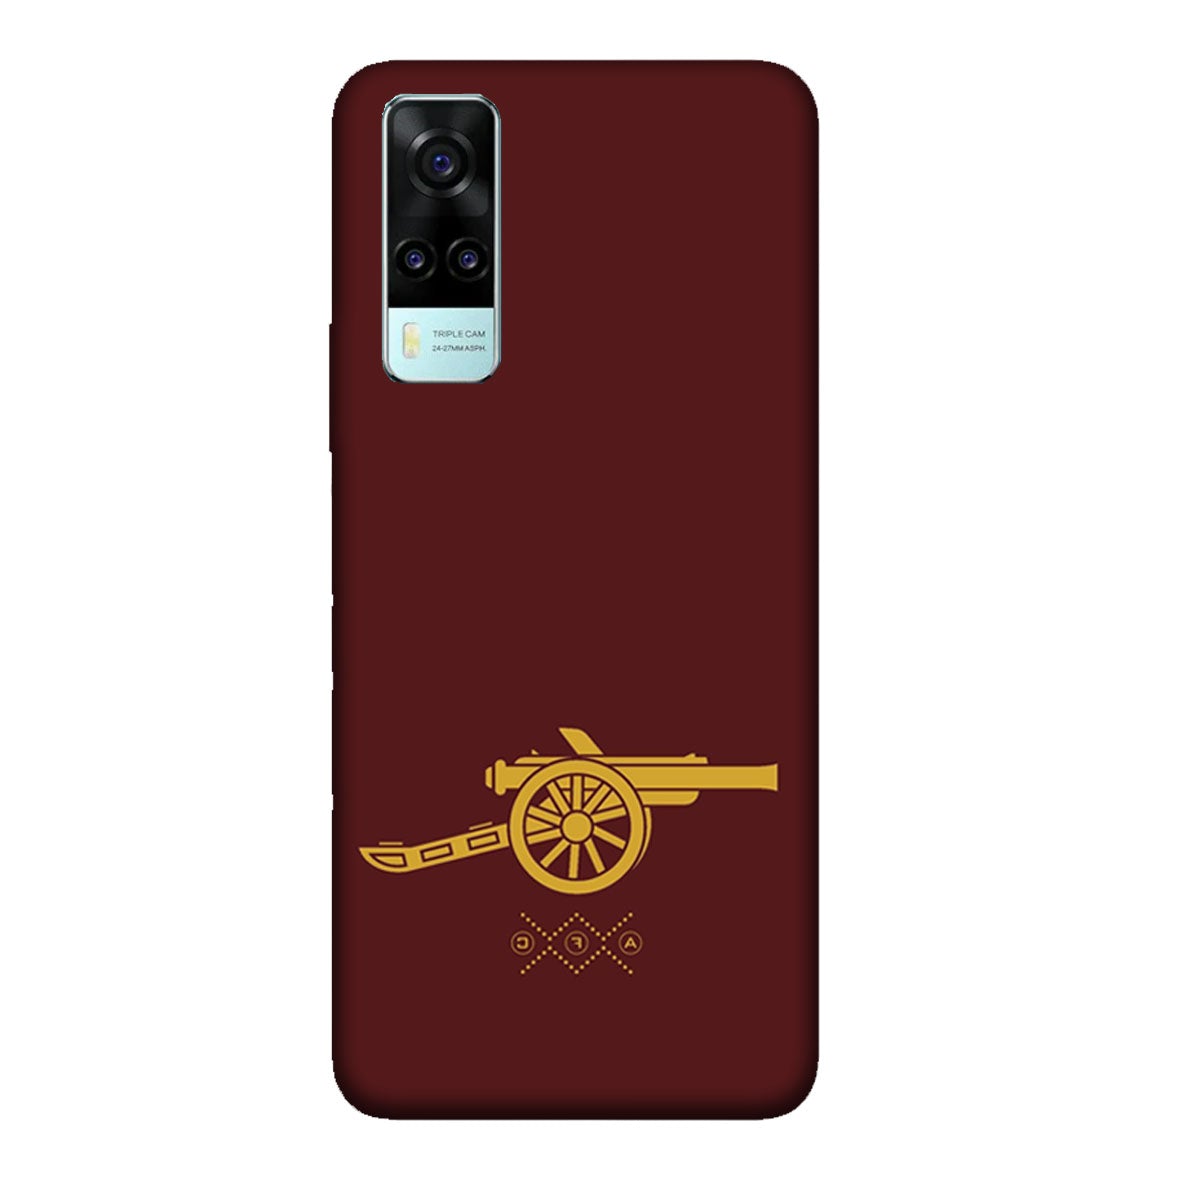 Arsenal - Gunner- Maroon - Mobile Phone Cover - Hard Case - Vivo